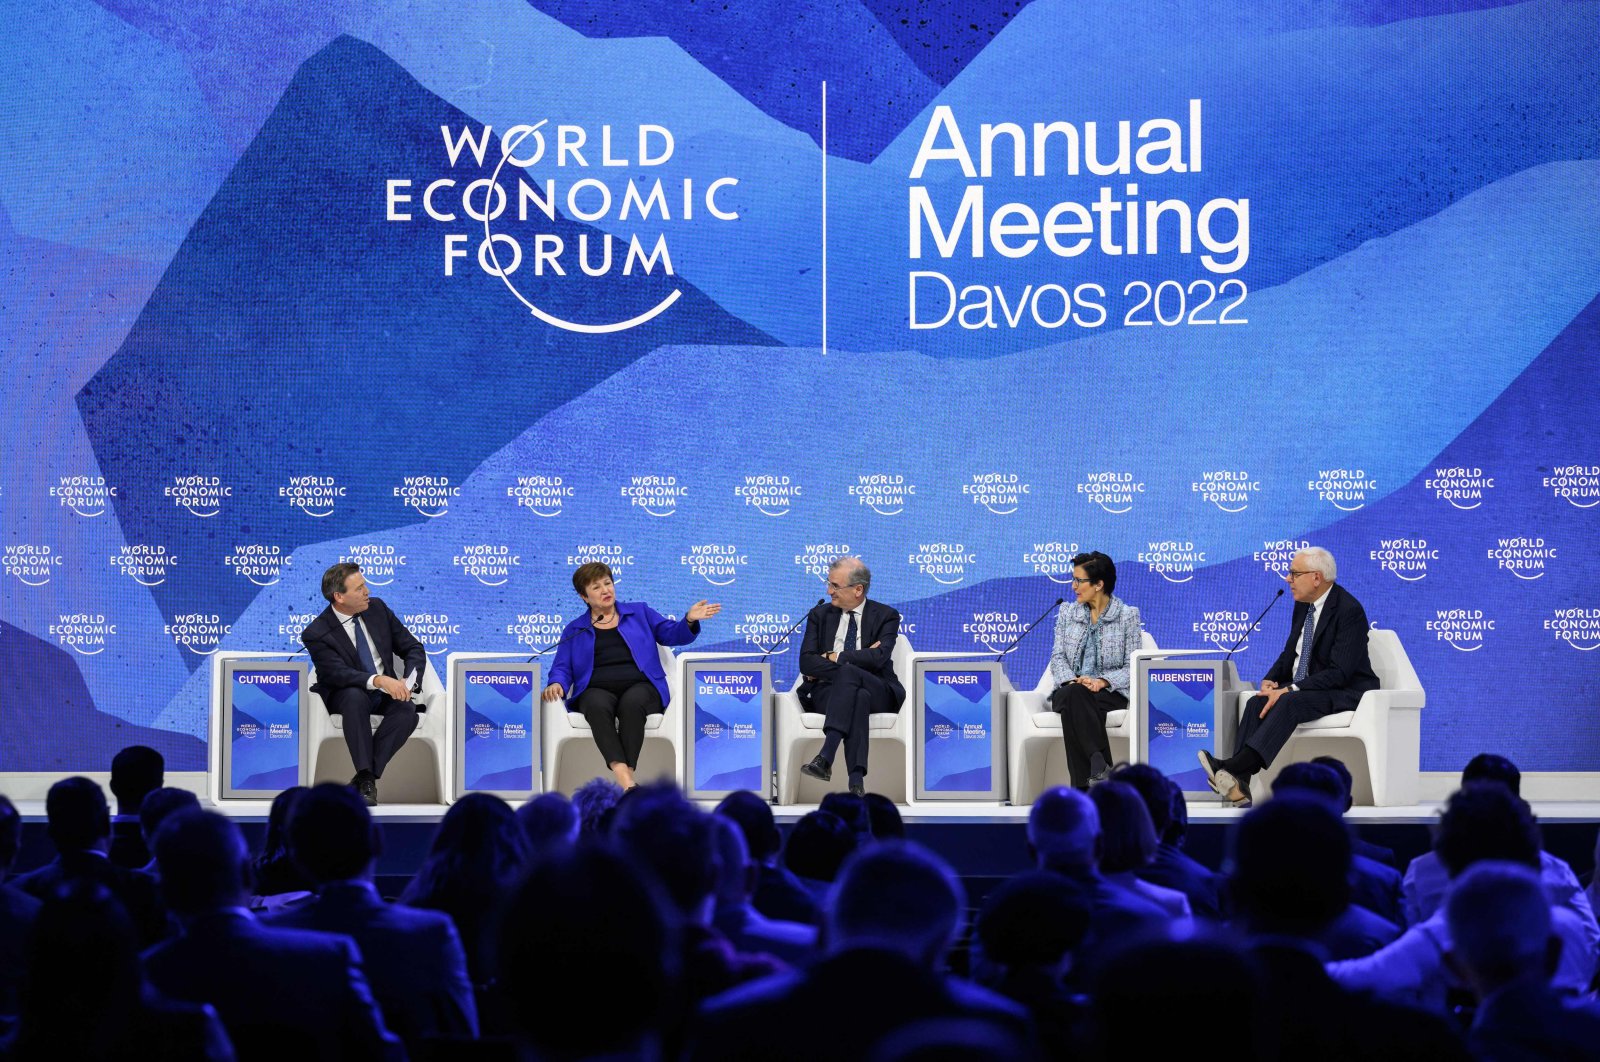 Resesi global ditandai sebagai pandangan ‘gelap’: Bisnis, pemimpin pemerintah di Davos